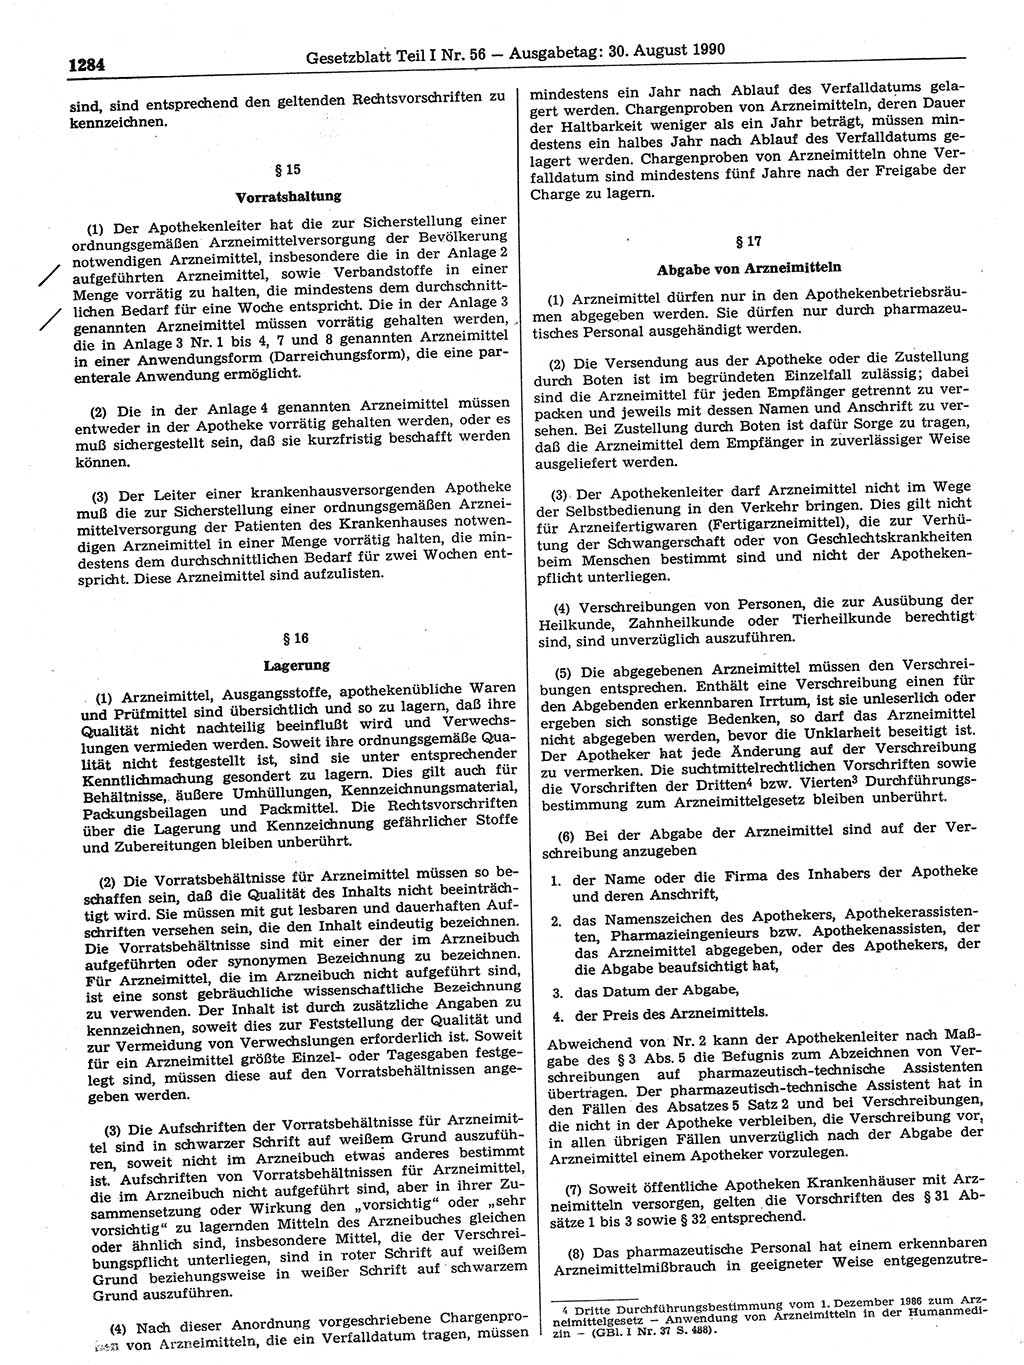 Gesetzblatt (GBl.) der Deutschen Demokratischen Republik (DDR) Teil Ⅰ 1990, Seite 1284 (GBl. DDR Ⅰ 1990, S. 1284)